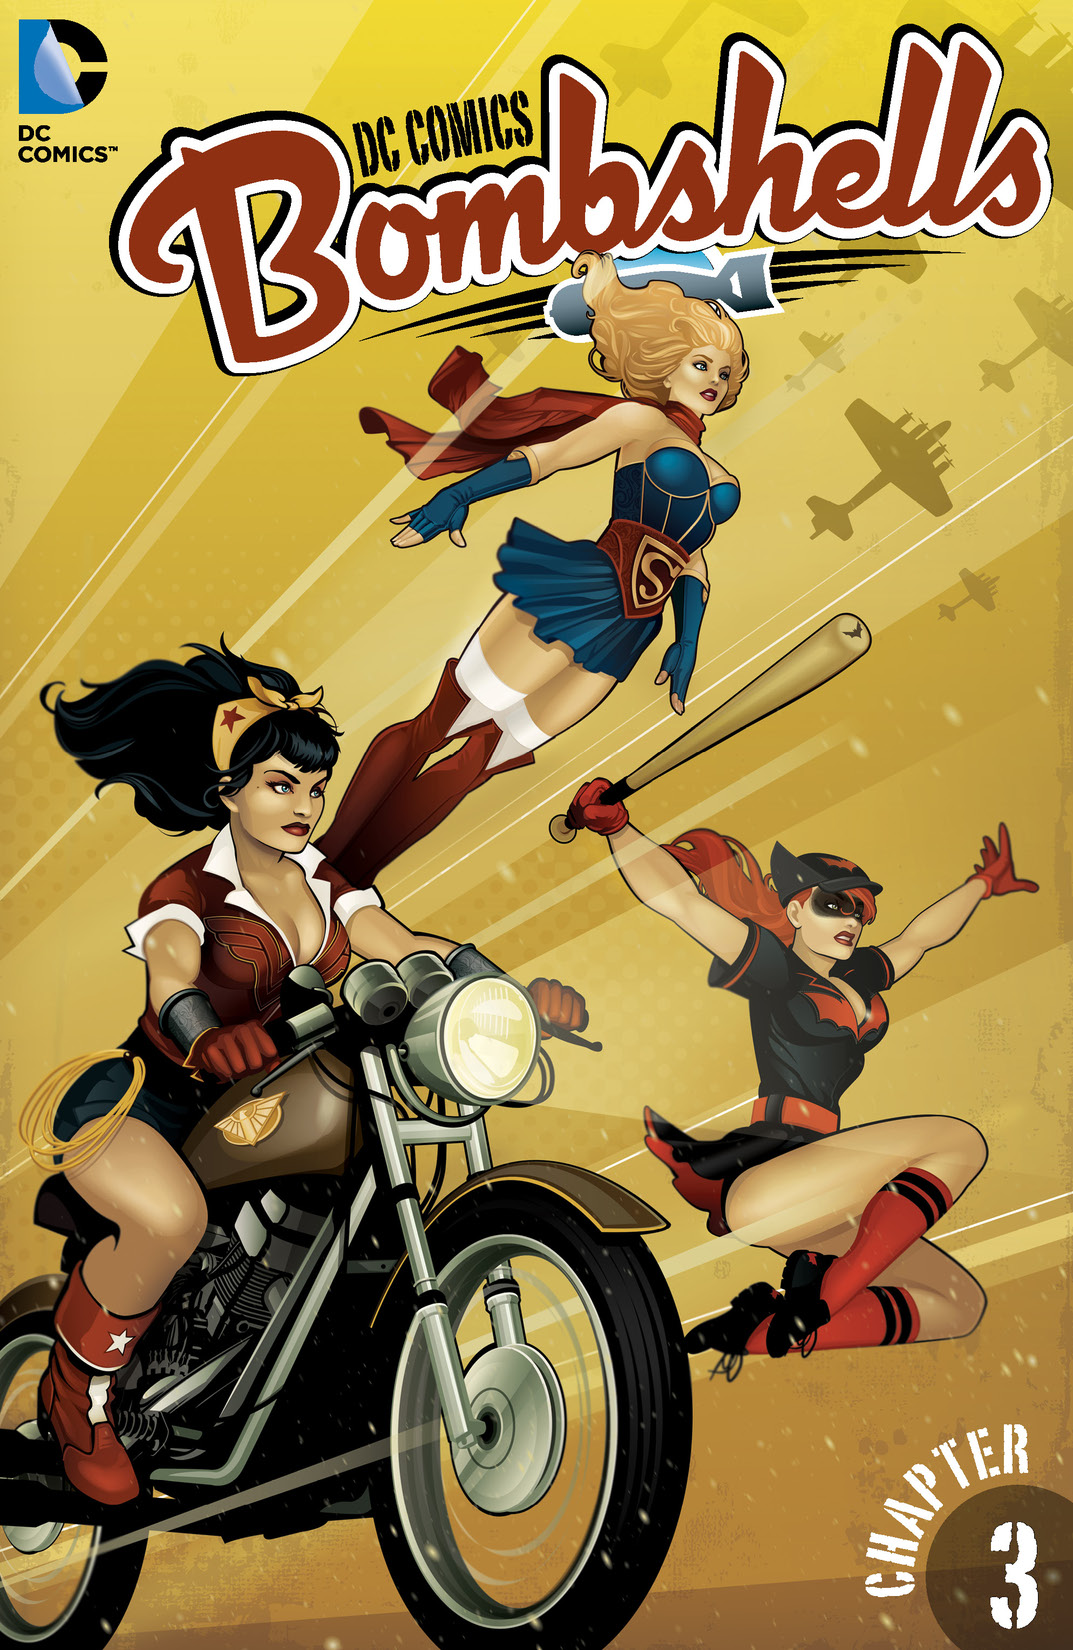 DC Comics: Bombshells #3 preview images